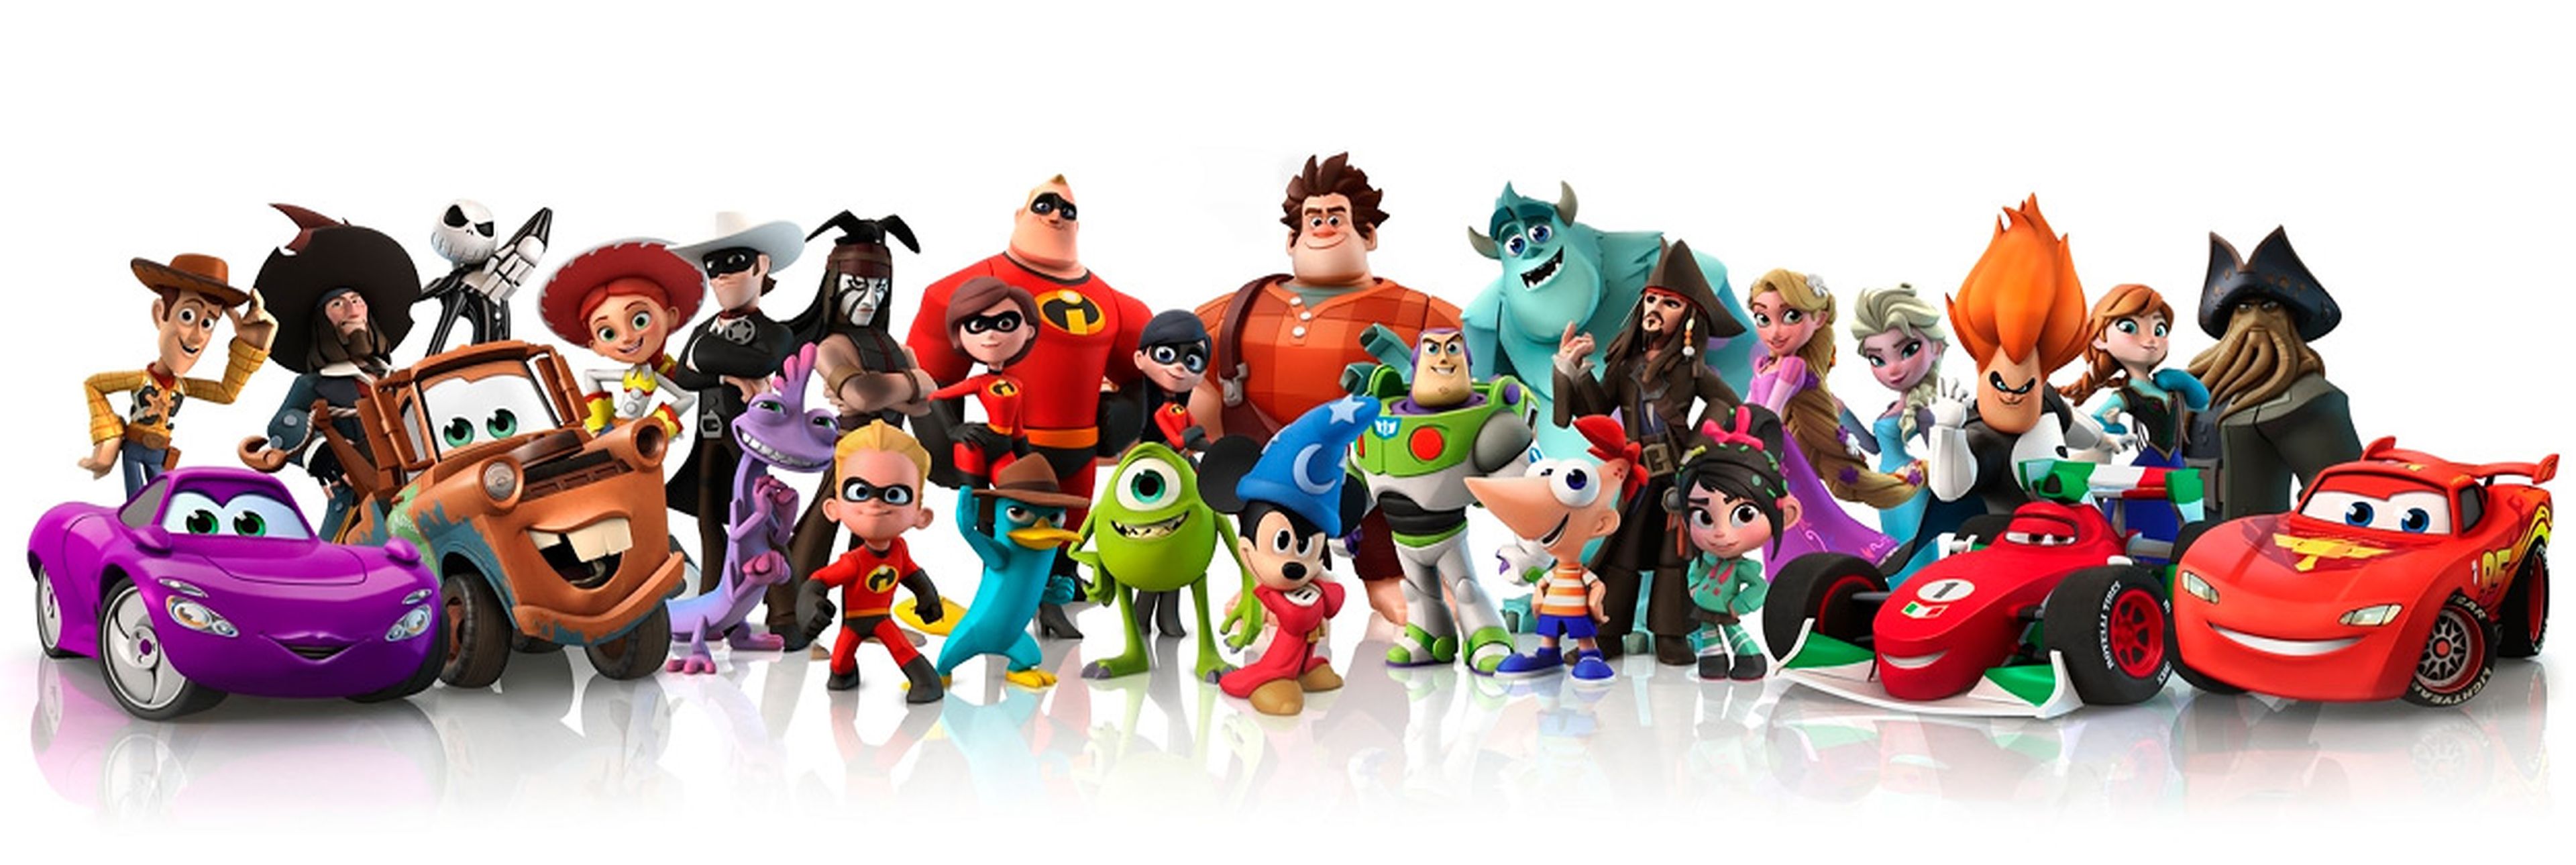 El primer Disney Infinity tiró del carisma de sus personajes clásicos y de los de Pixar